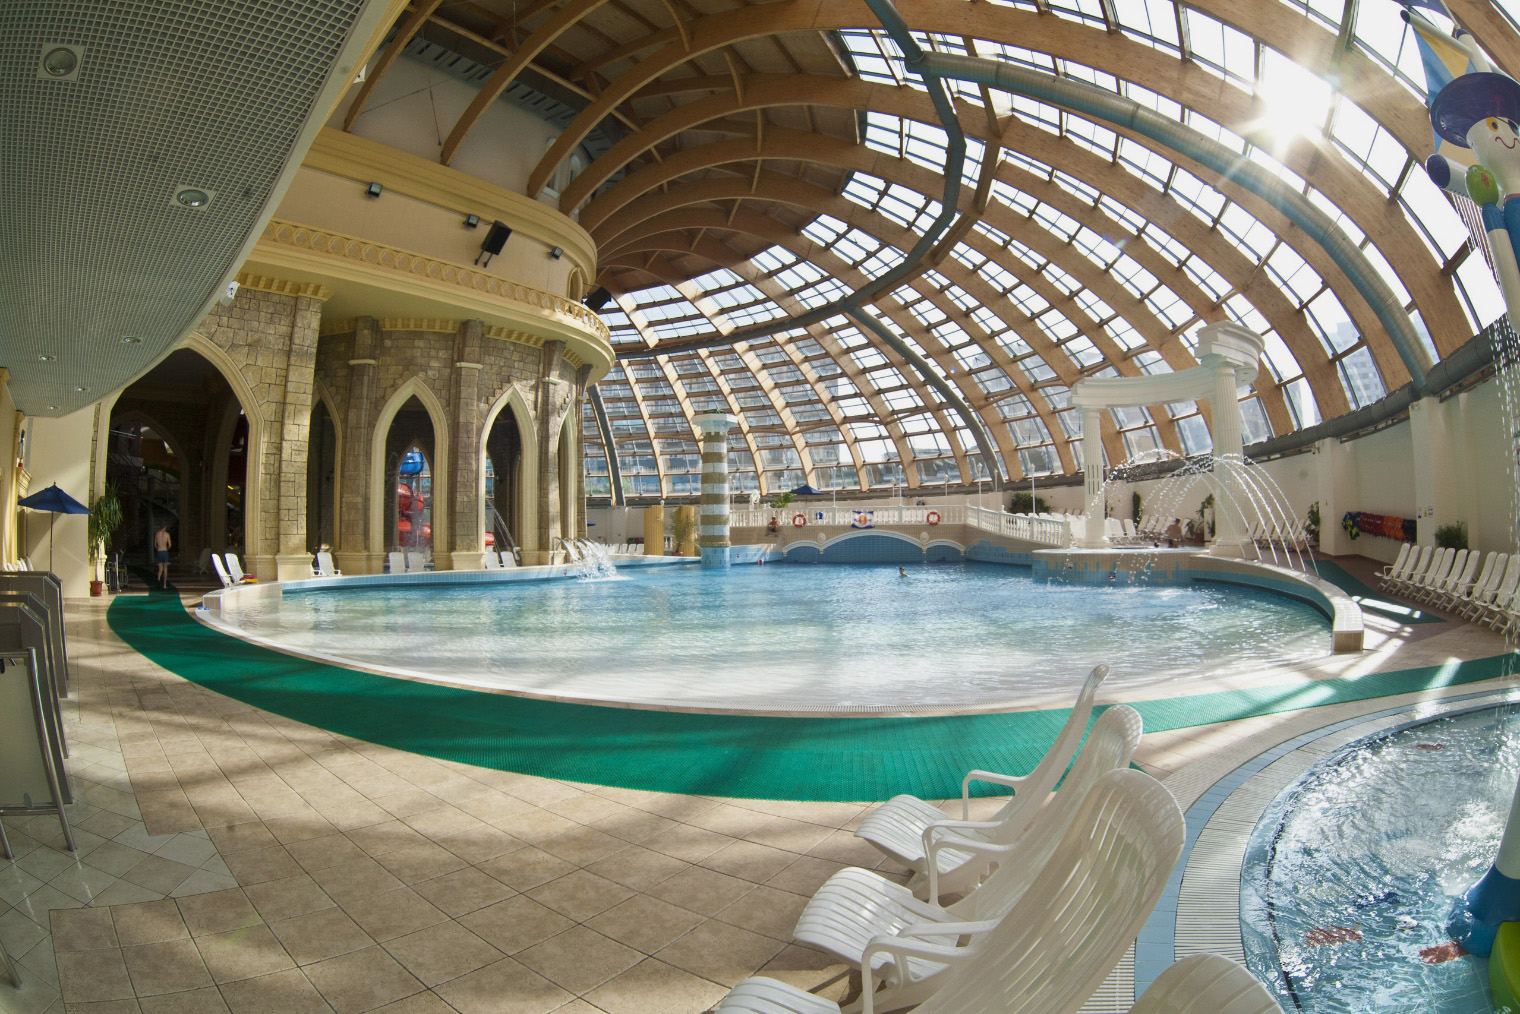 Гости Московского аквапарка и самого большого аквапарка Москвы.
Лето ждет вас здесь в любое время года!